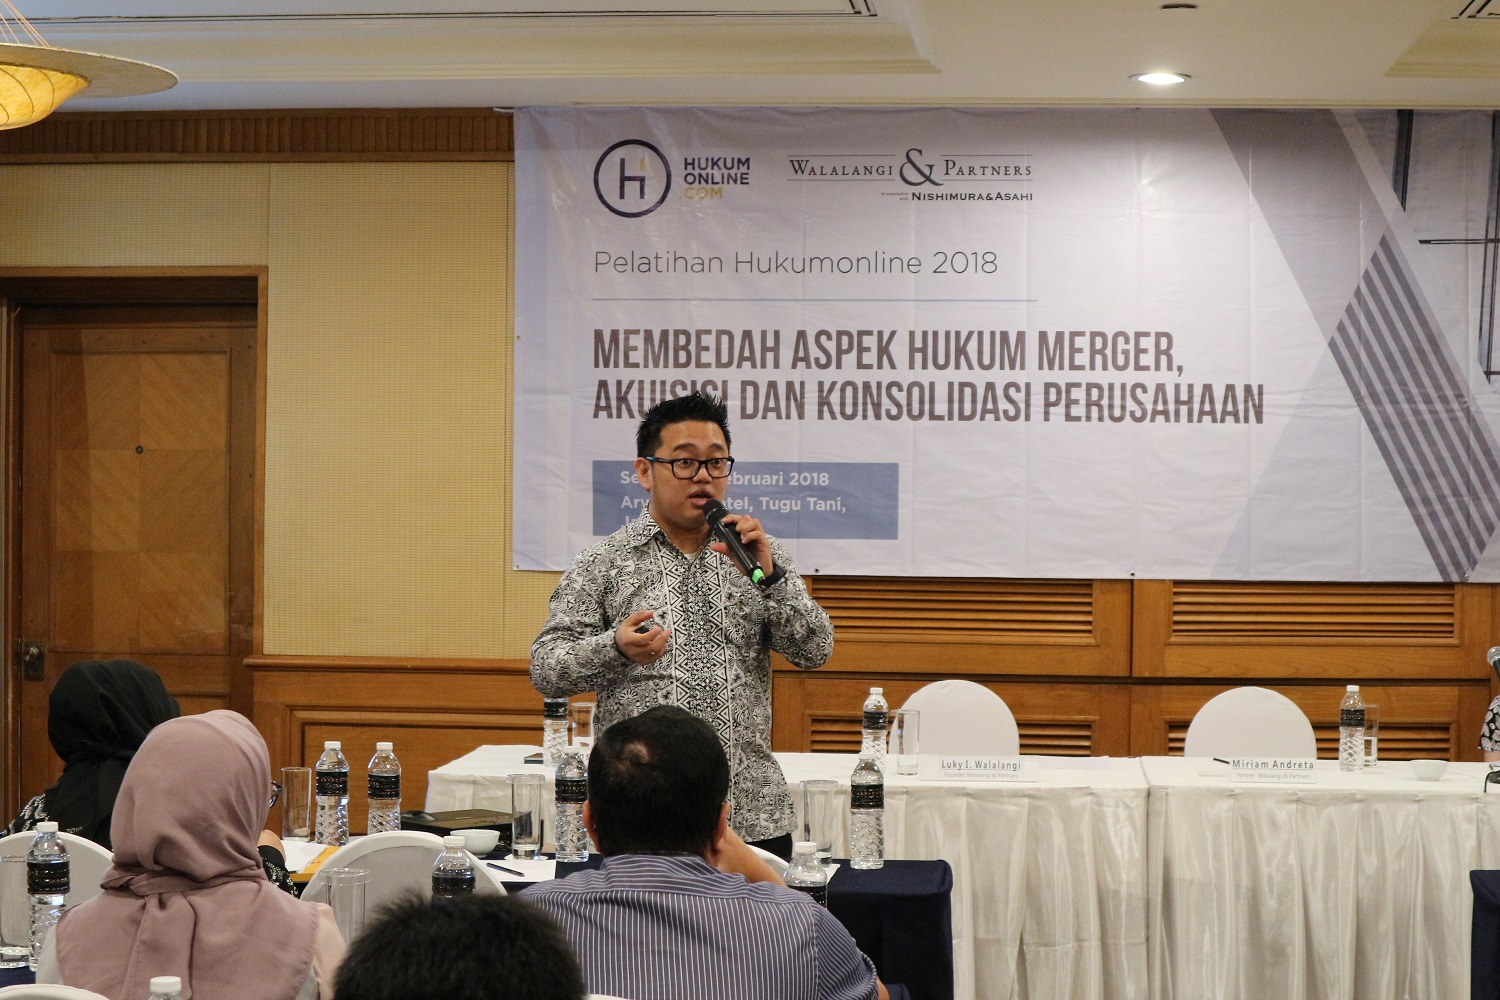 Bapak Hans A. Kurniawan, Associate dari Walalangi & Partners dalam Pelatihan Hukumonline 2018 